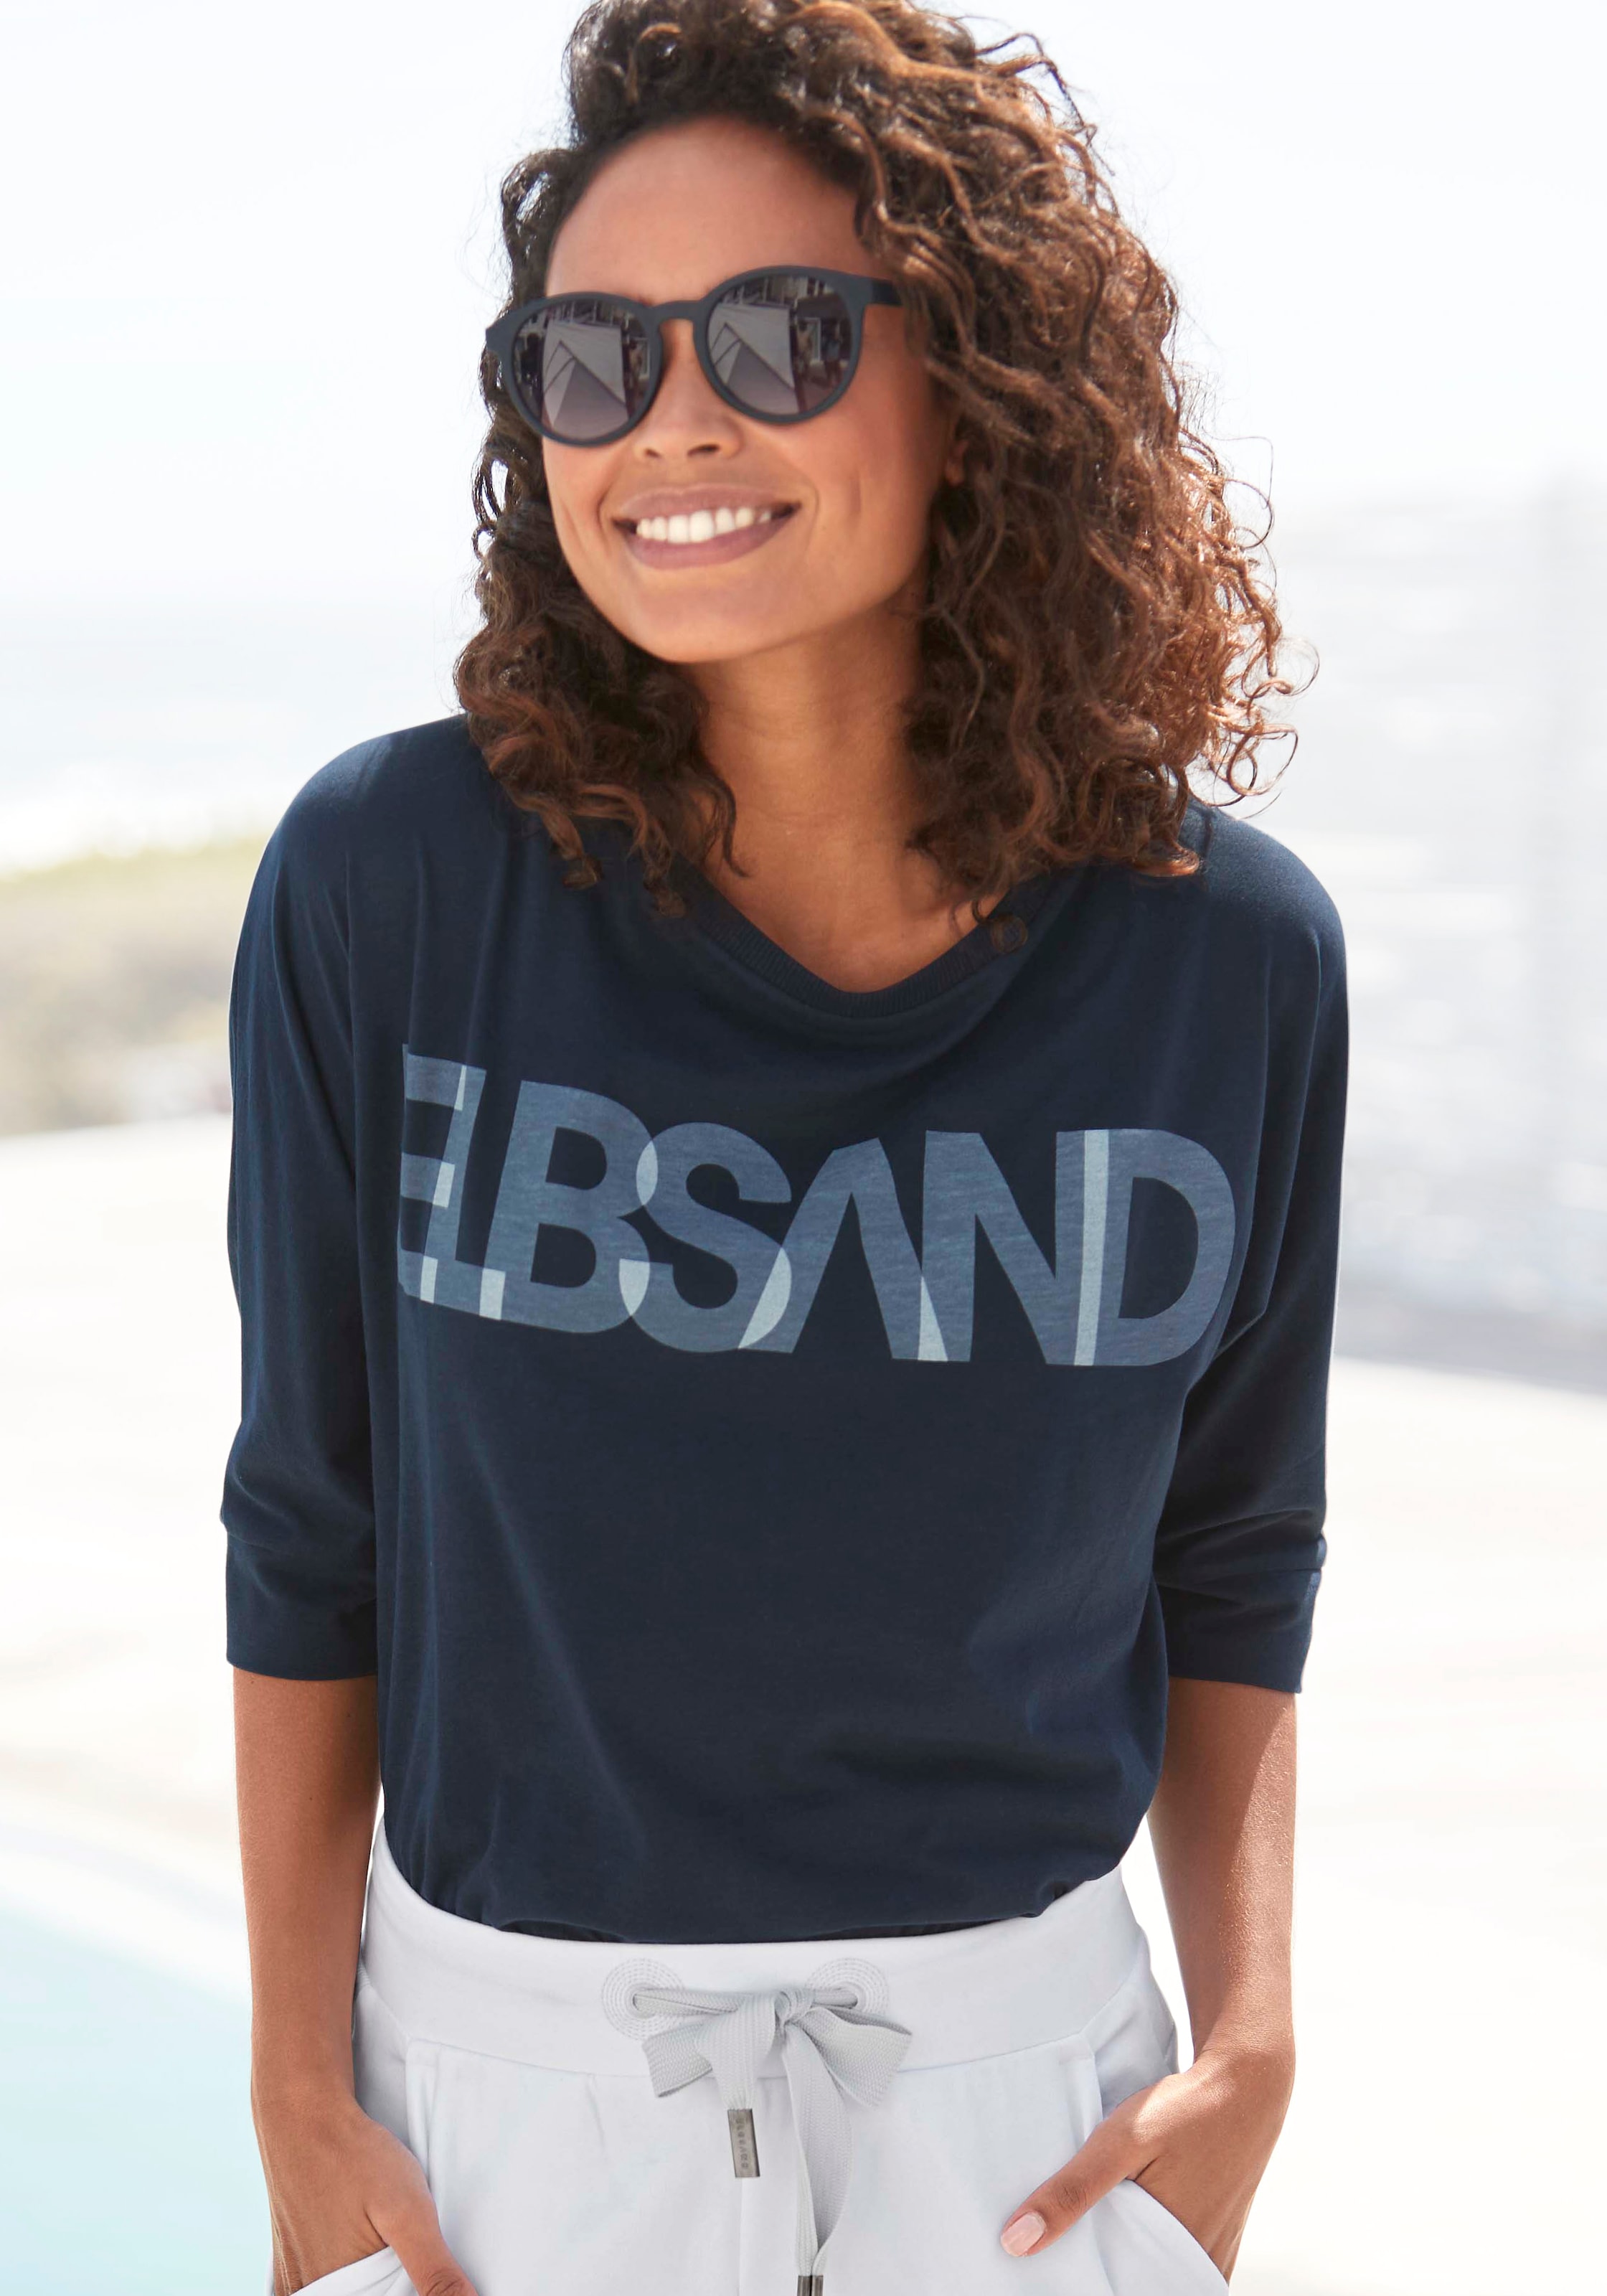 Elbsand 3/4-Arm-Shirt, mit Logodruck, Baumwoll-Mix, lockere Passform online  bestellen bei Jelmoli-Versand Schweiz